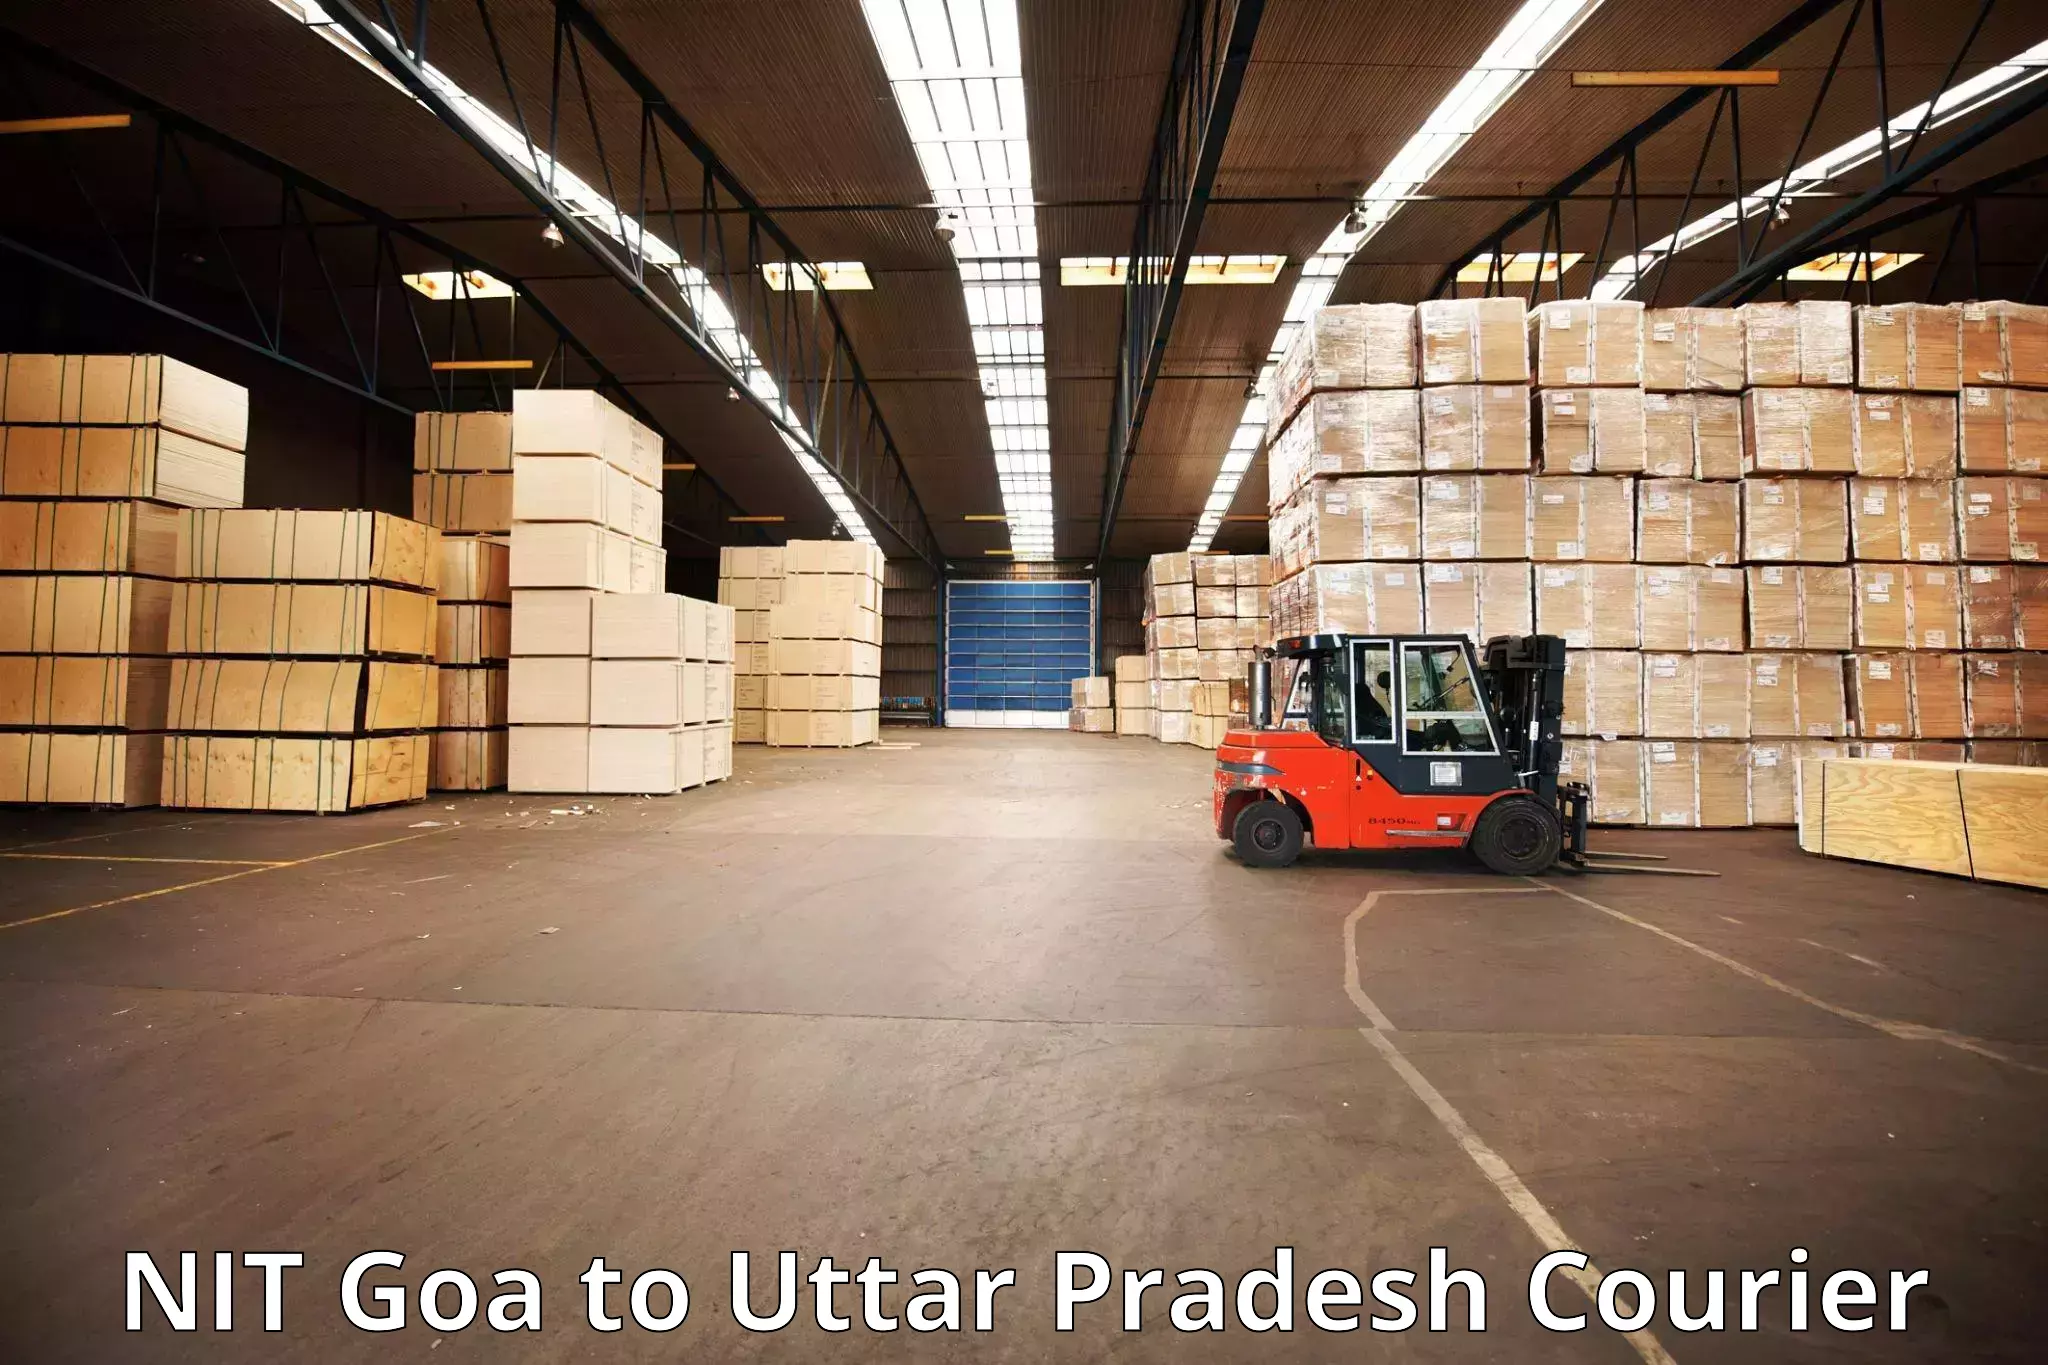 Rural baggage transport NIT Goa to Uttar Pradesh